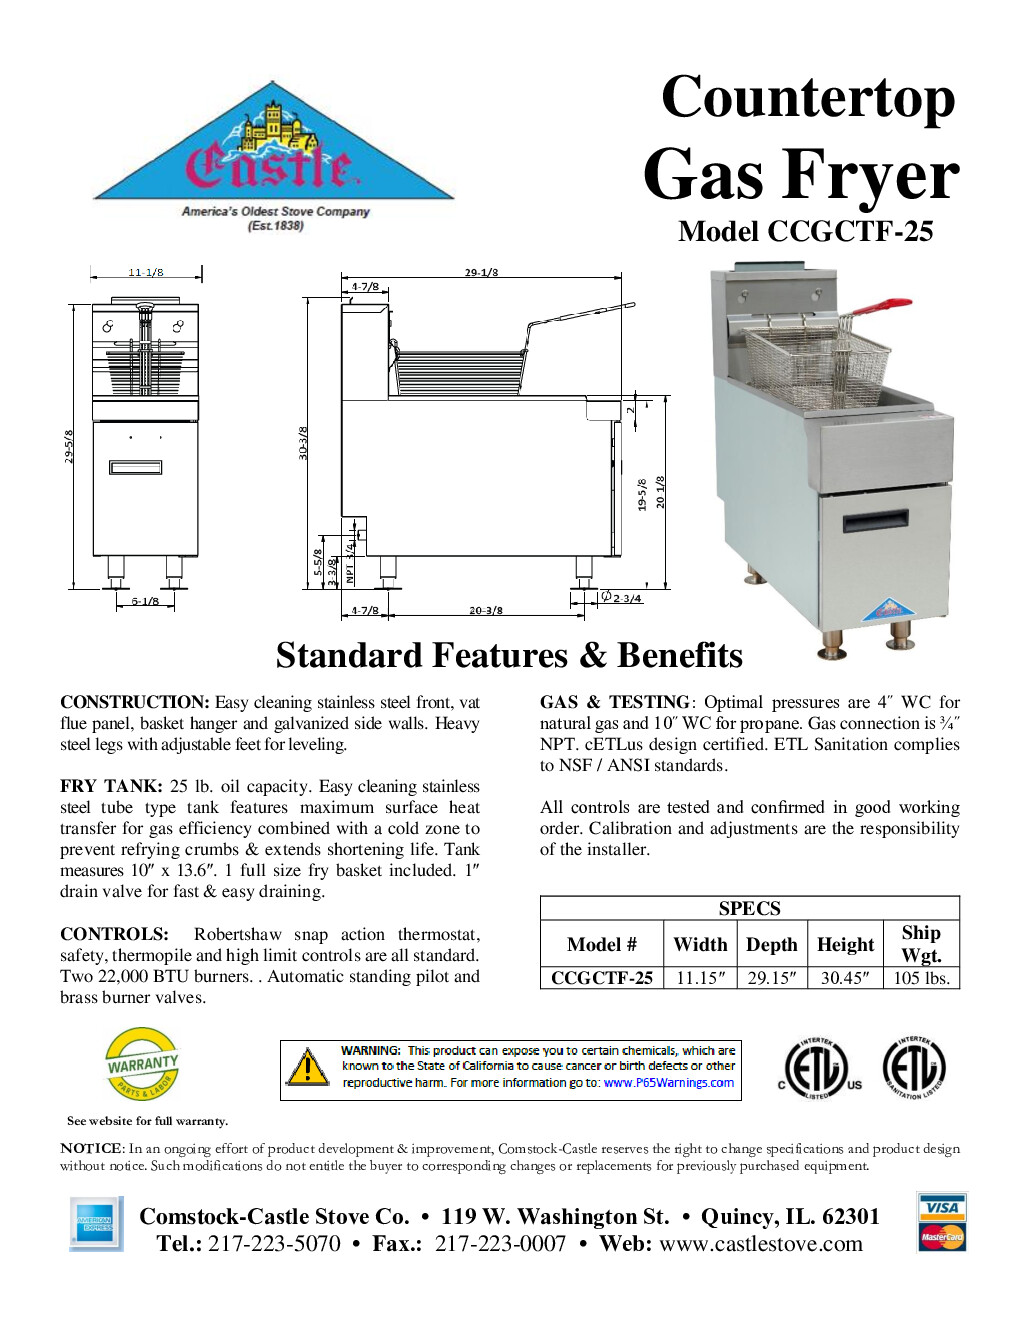 Comstock-Castle CCGTF-25-N Full Pot Countertop Gas Fryer